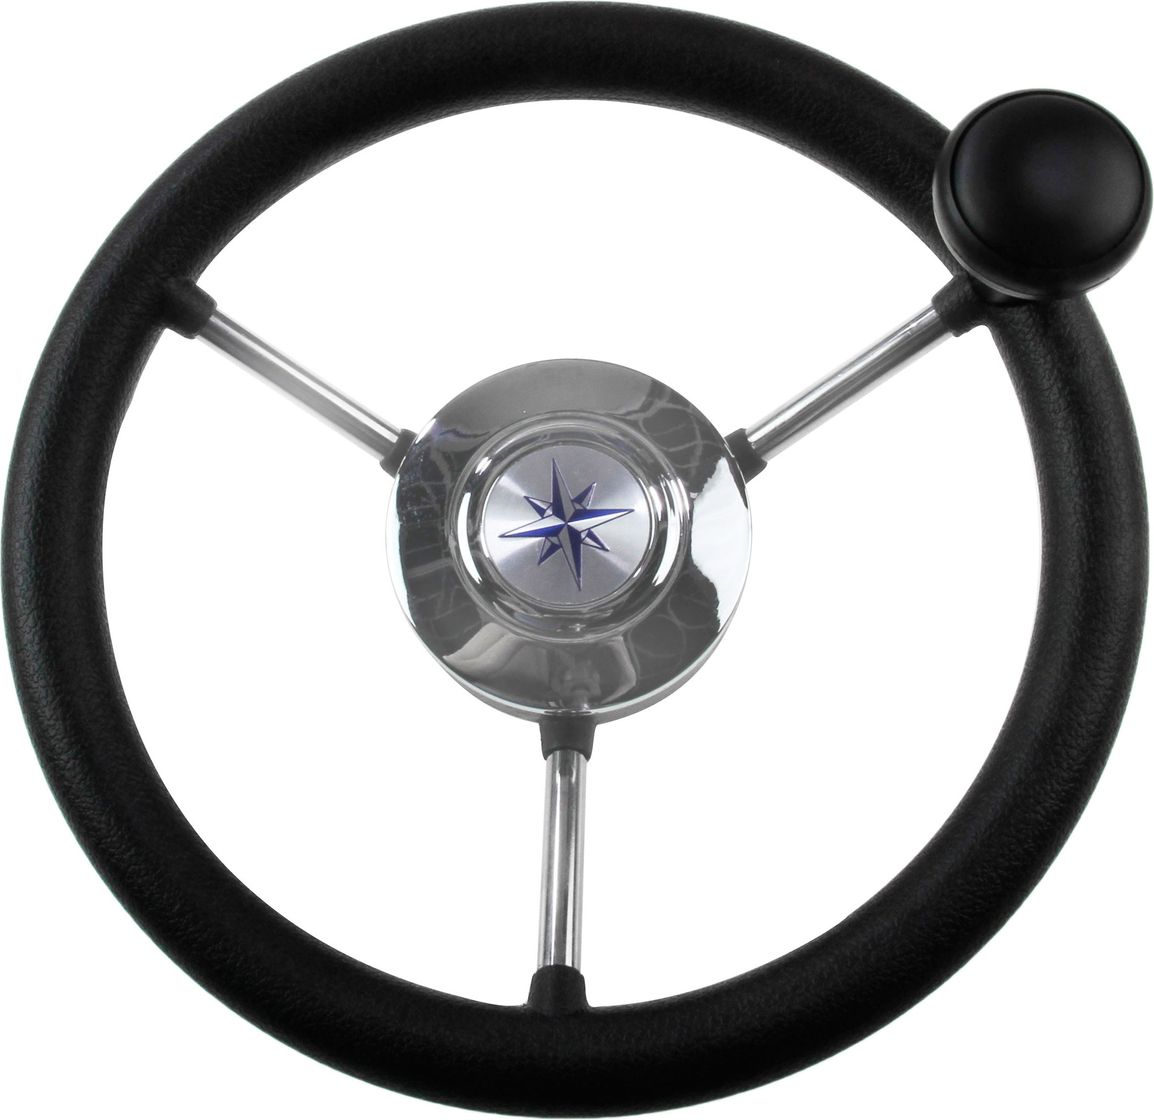 Рулевое колесо LIPARI обод черный, спицы серебряные д. 280 мм со спинером VN828050-01 рулевое колесо riviera обод и спицы д 350 мм vn8001 01